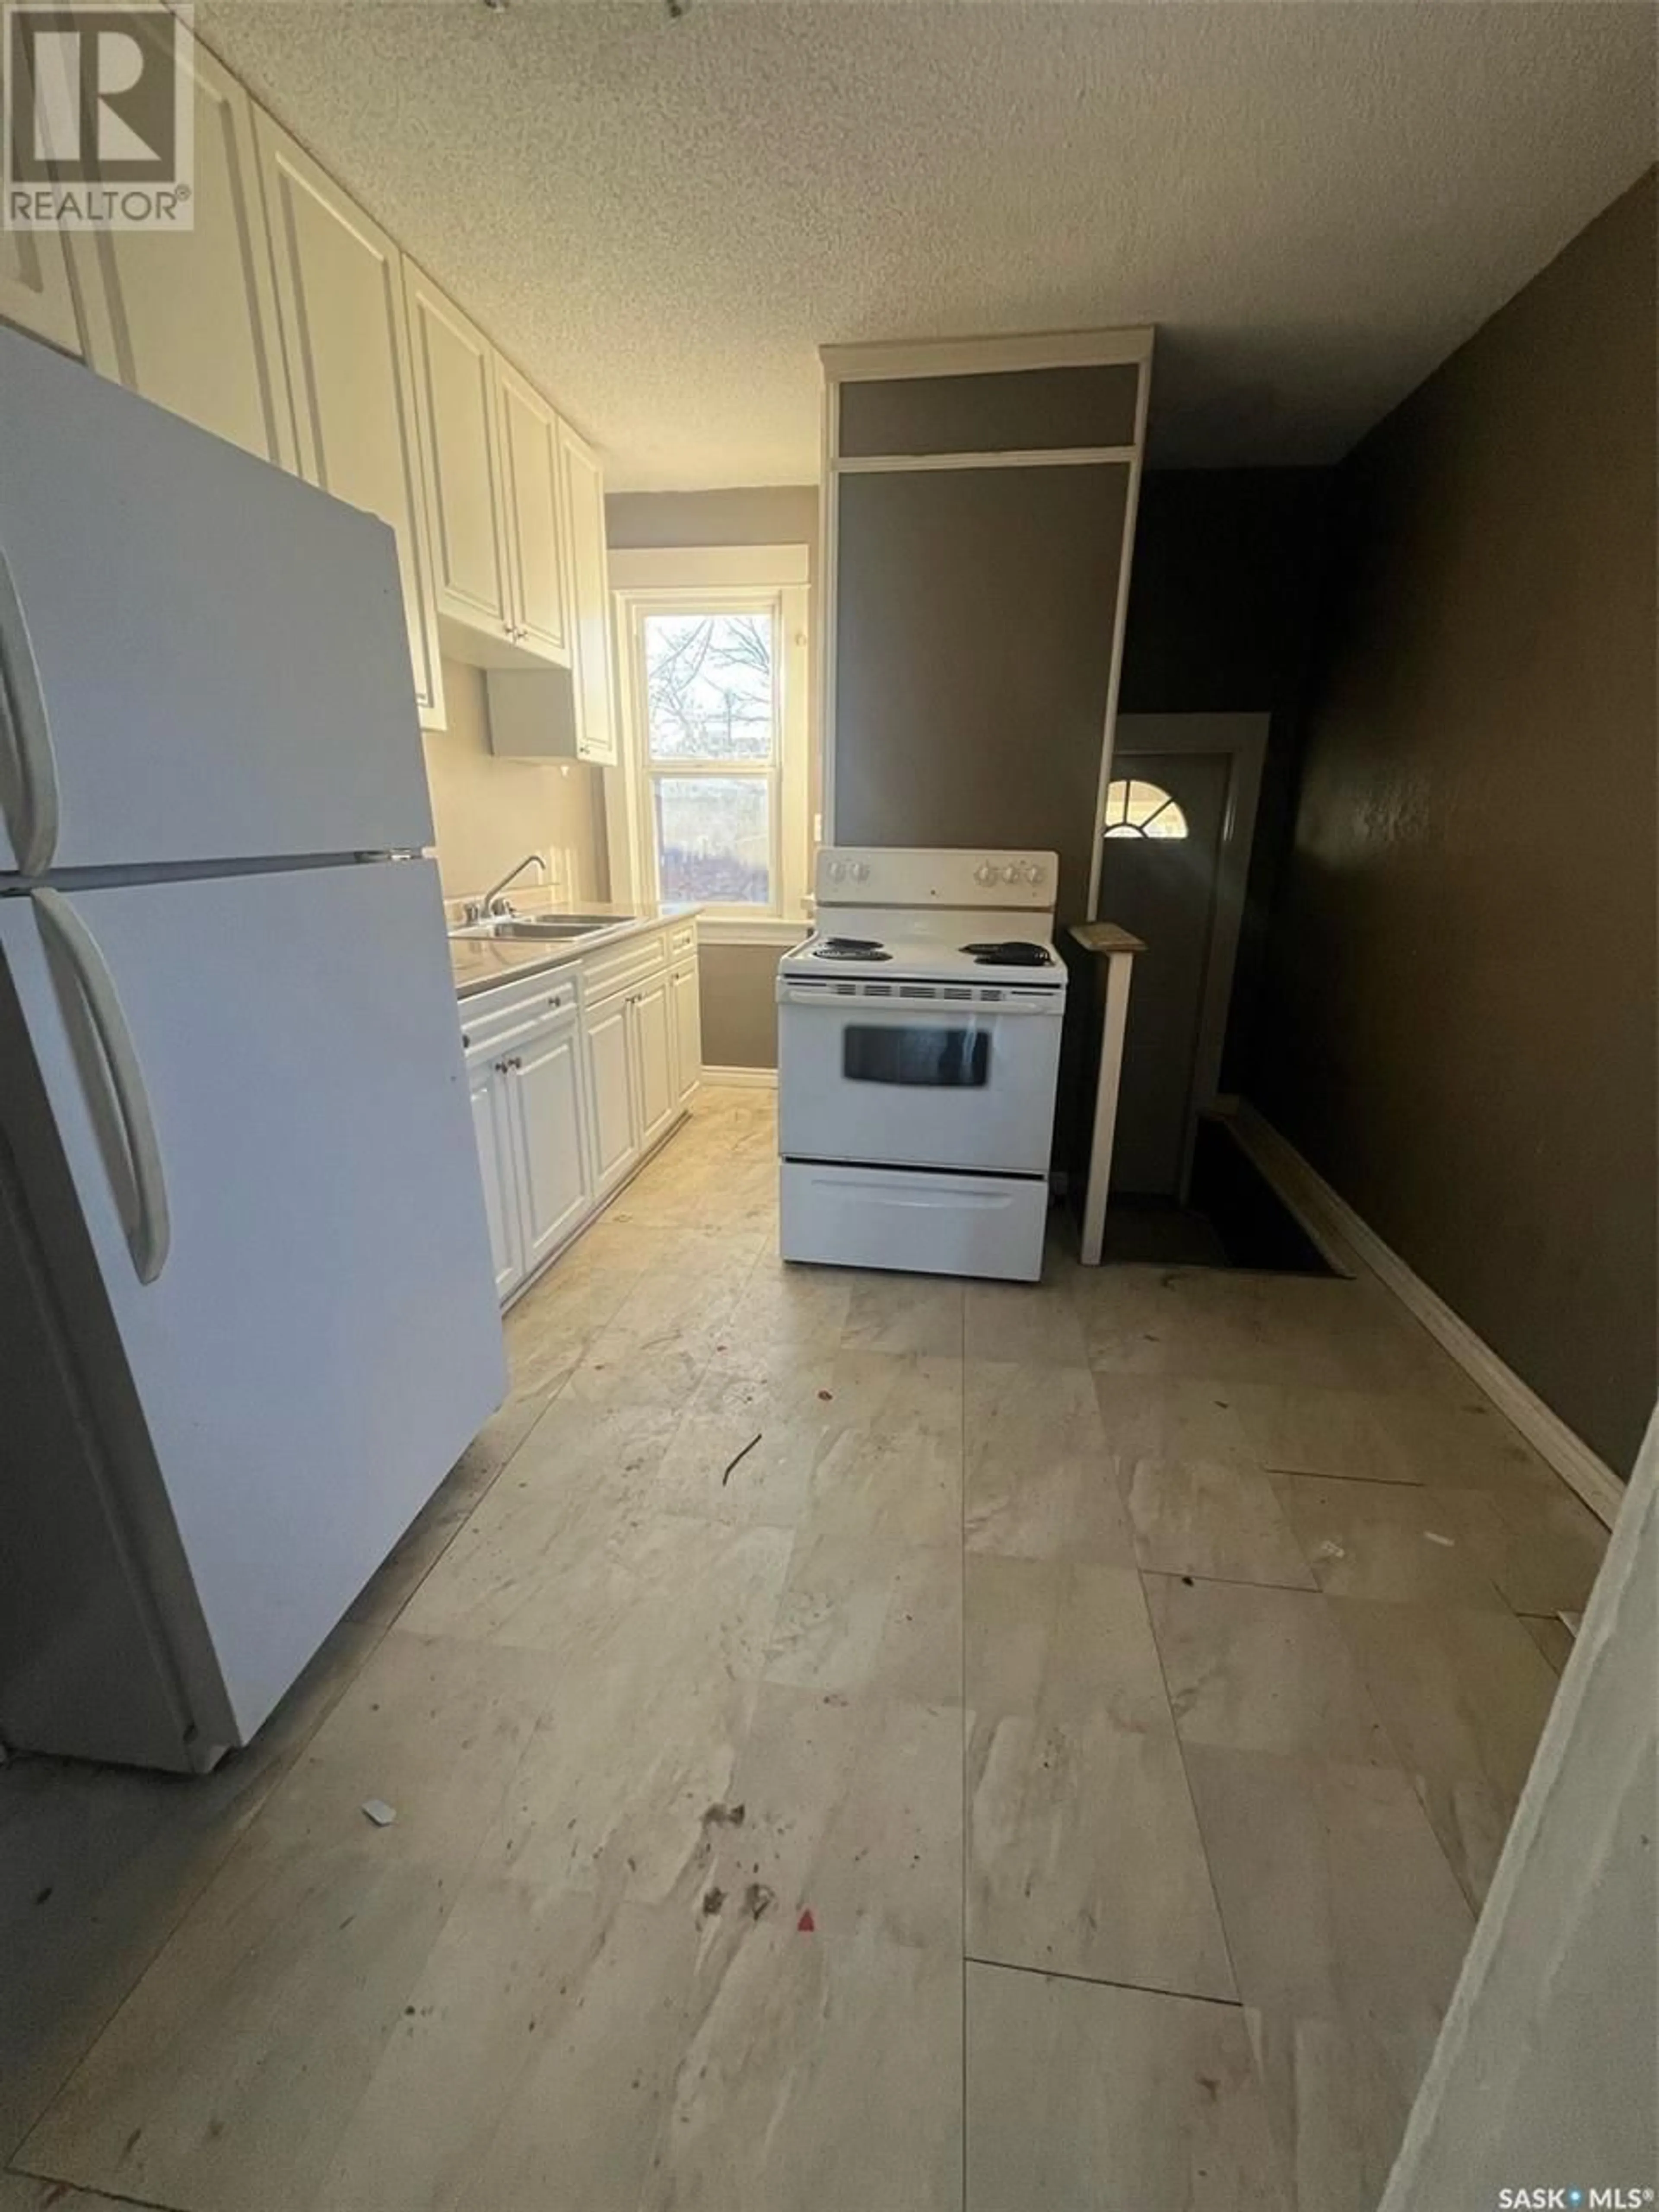 Standard kitchen for 2022 Quebec STREET, Regina Saskatchewan S4P1J9